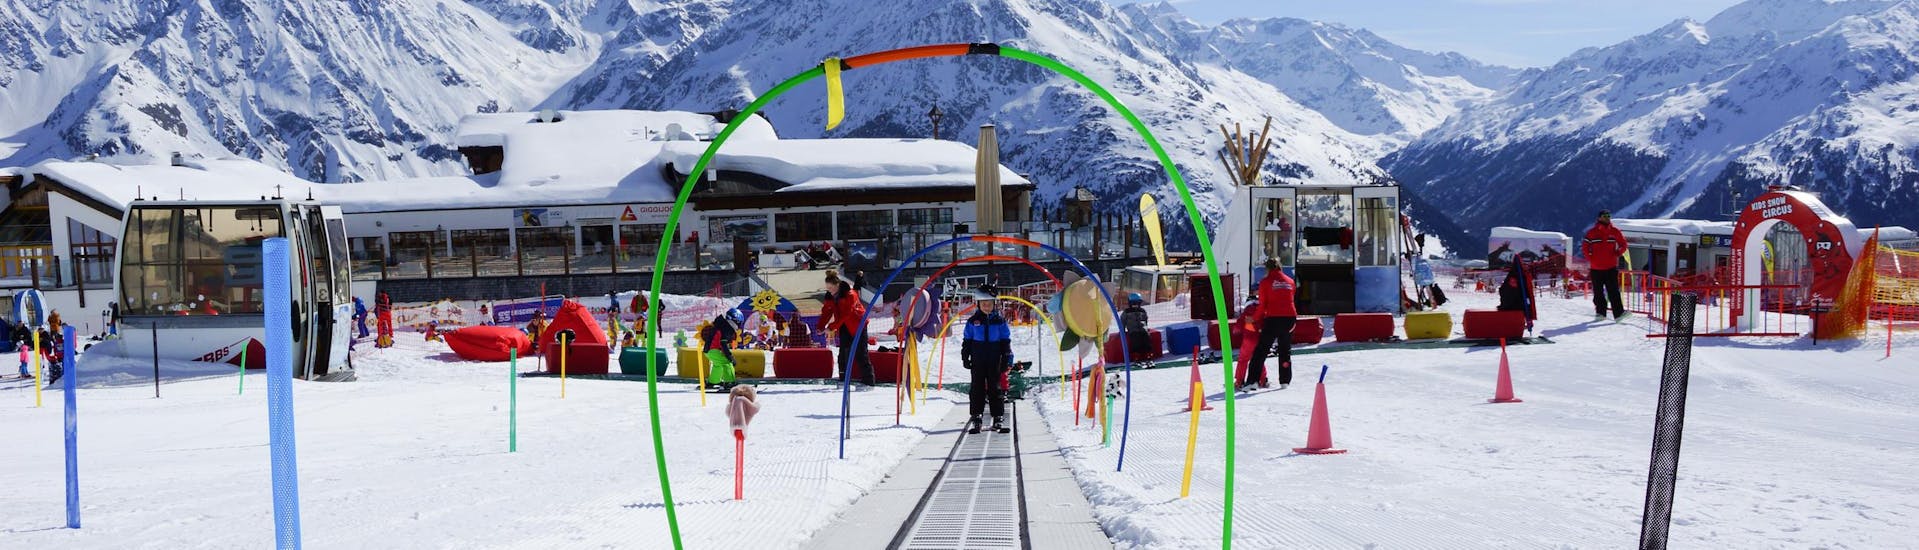 Skilessen voor kinderen (4-8 j.) voor alle niveaus incl. skiverhuur.